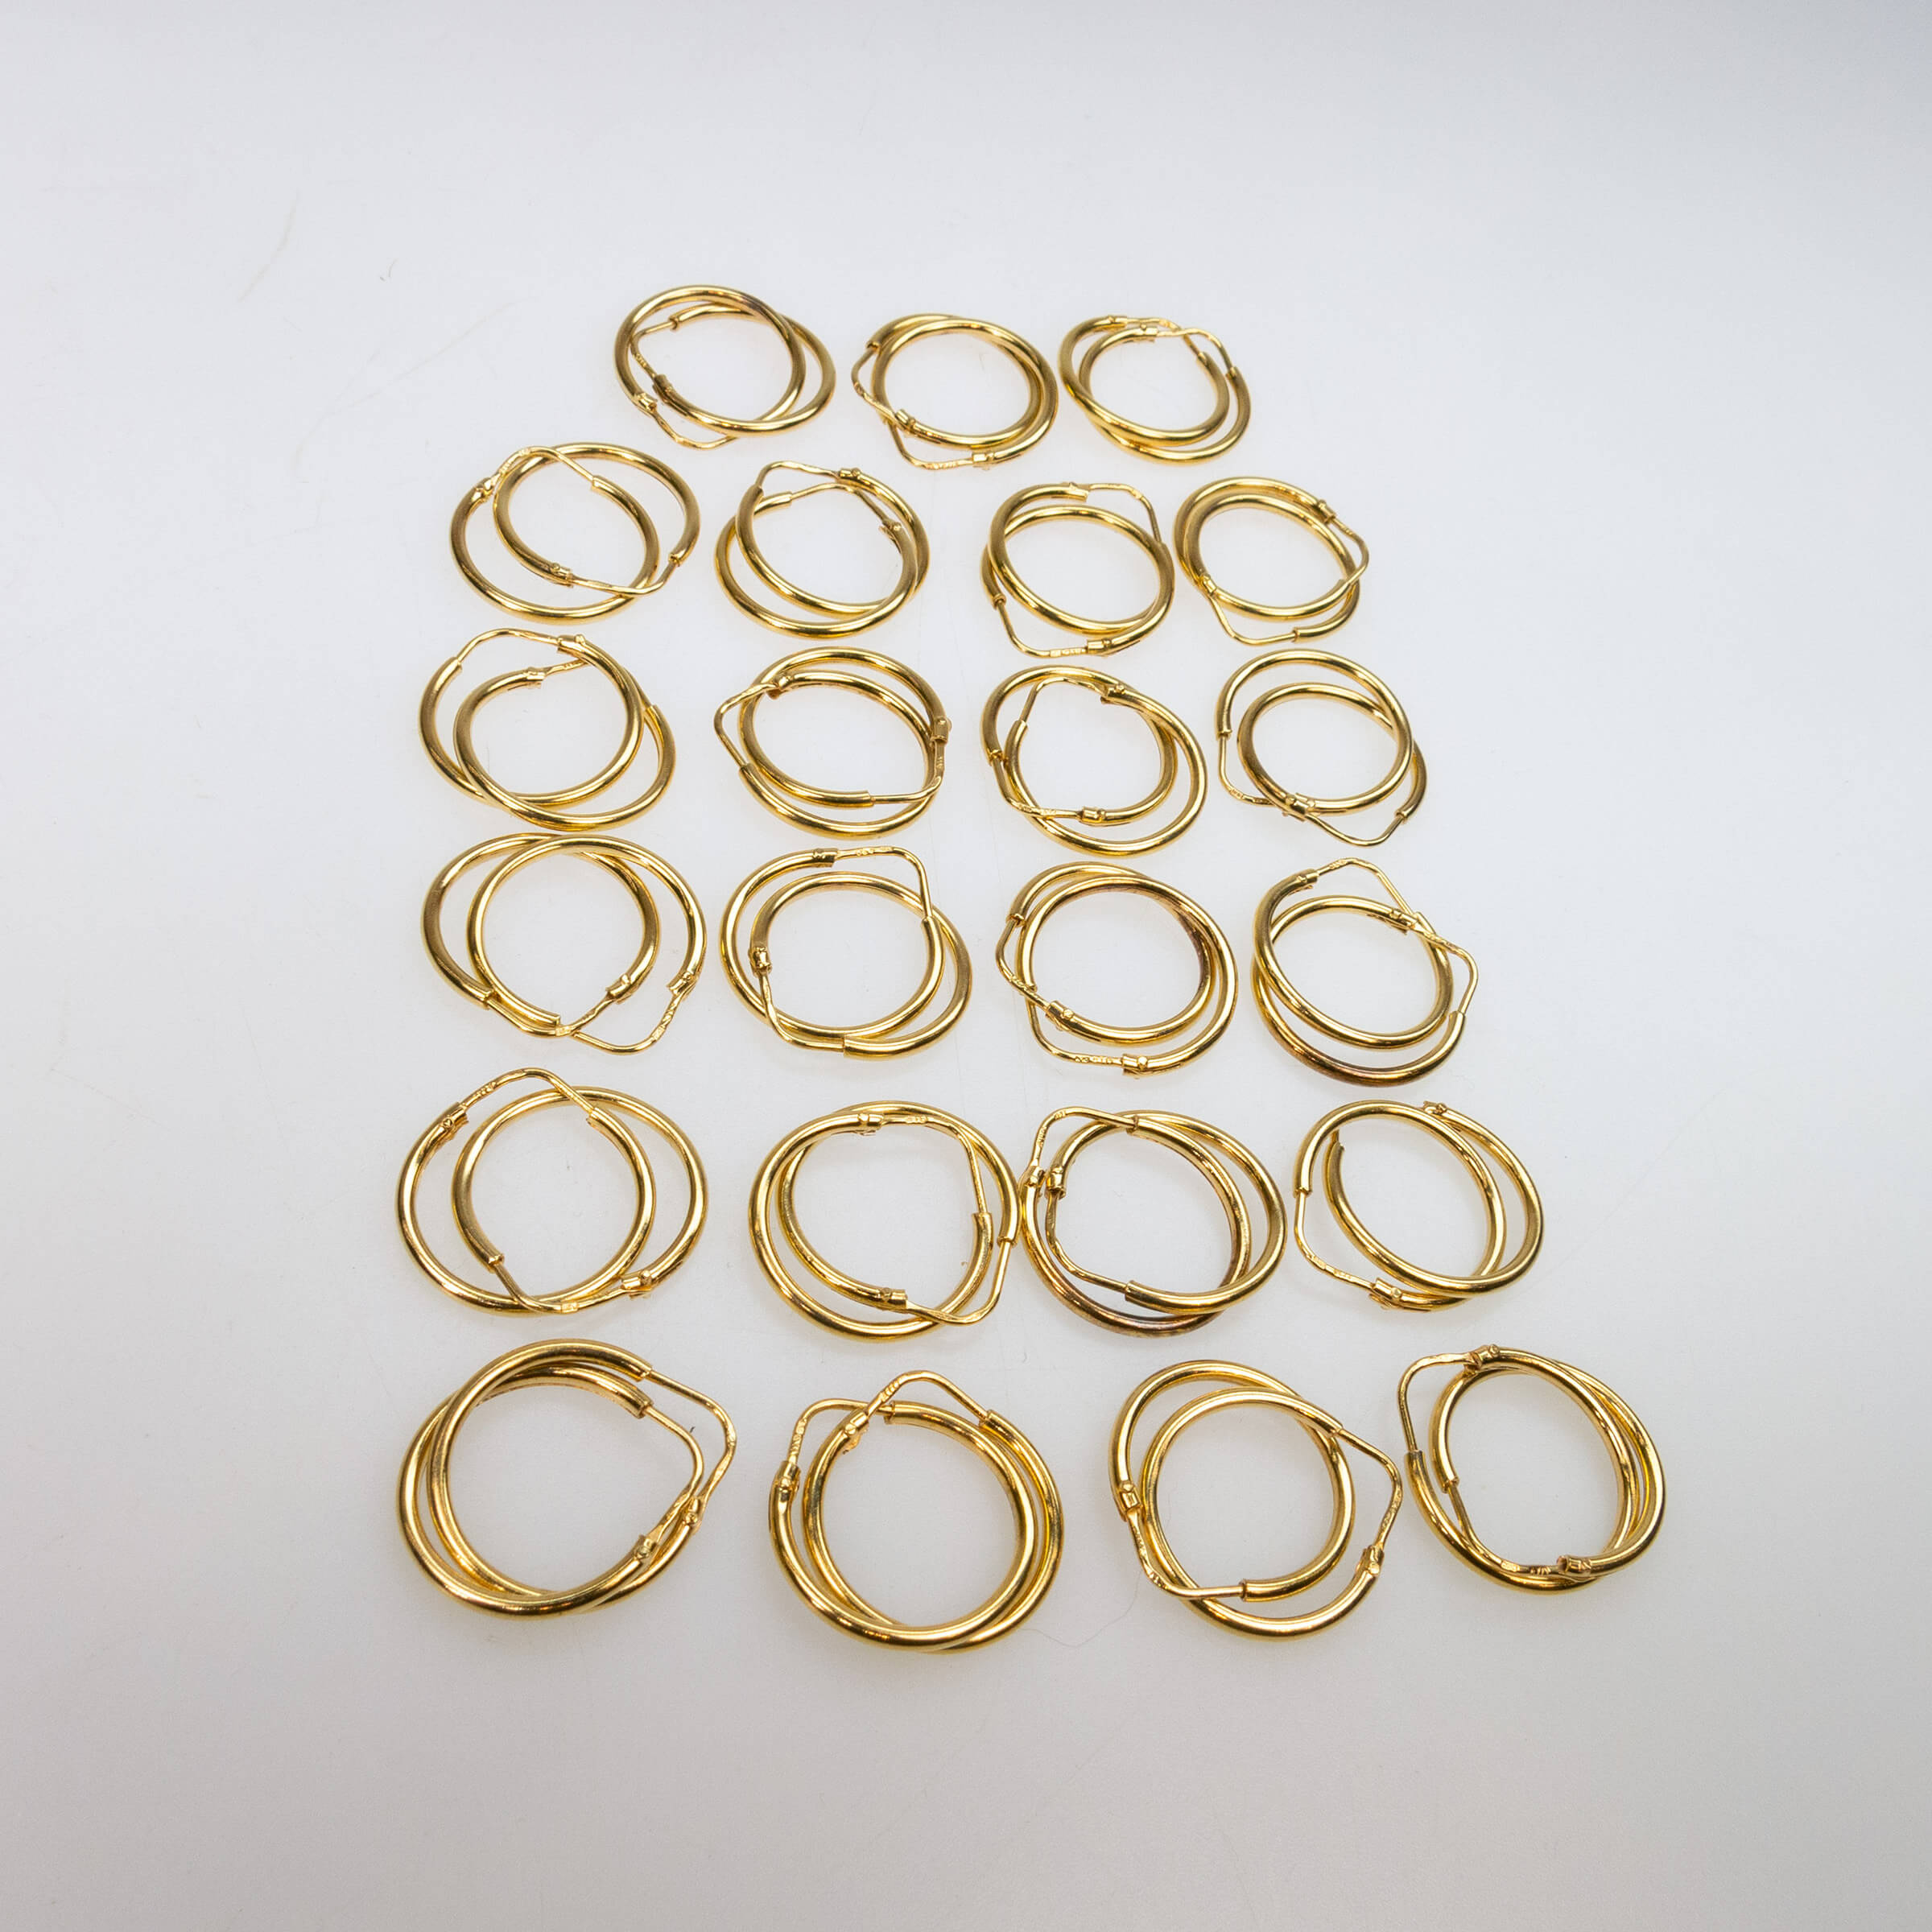 23 Pairs Of 18k Yellow Gold Hoop Earrings